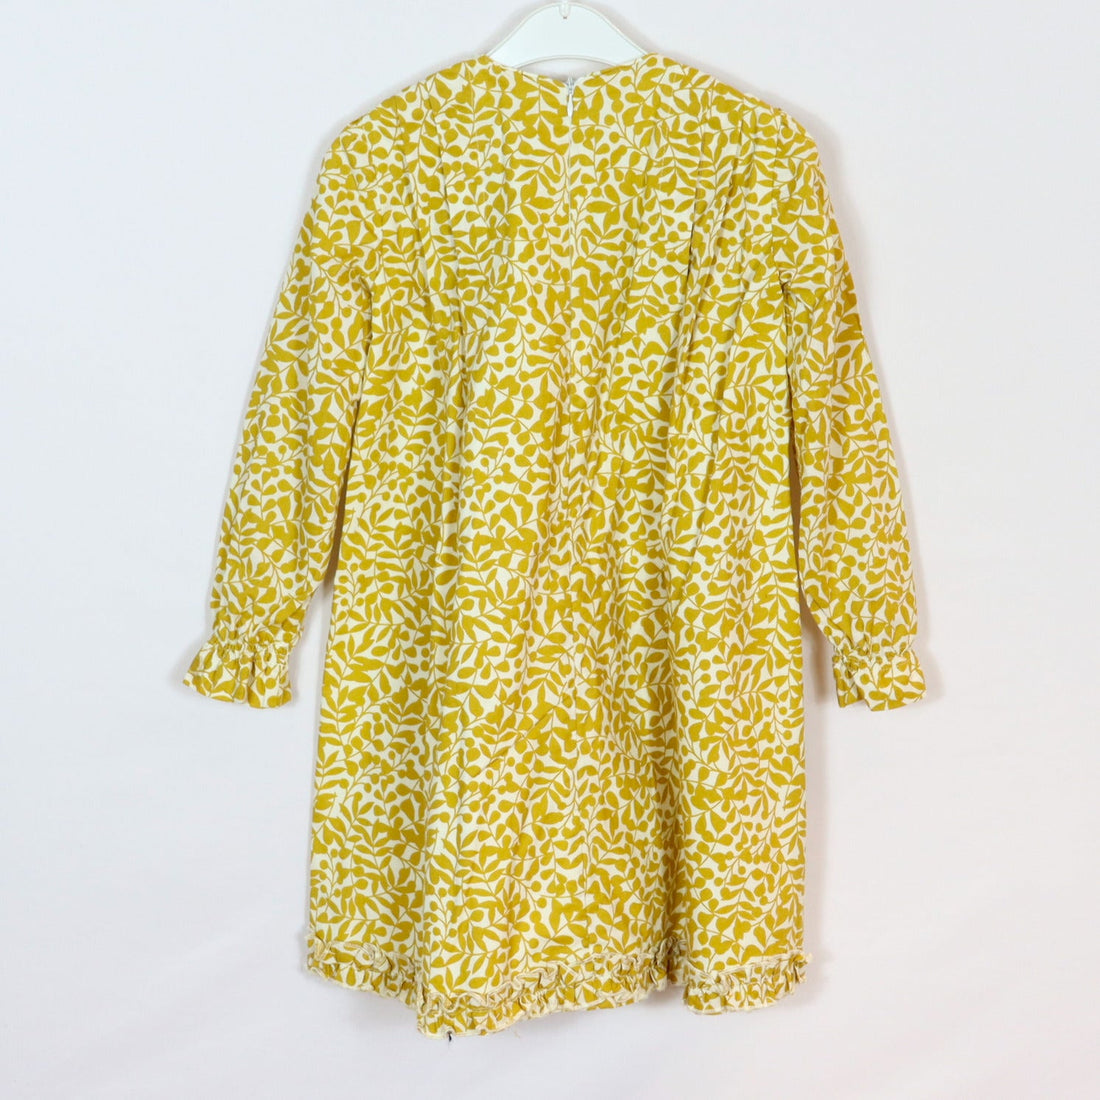 Kleid - Ali Oli - 128 - gelb - Blumen - Sehr guter Zustand